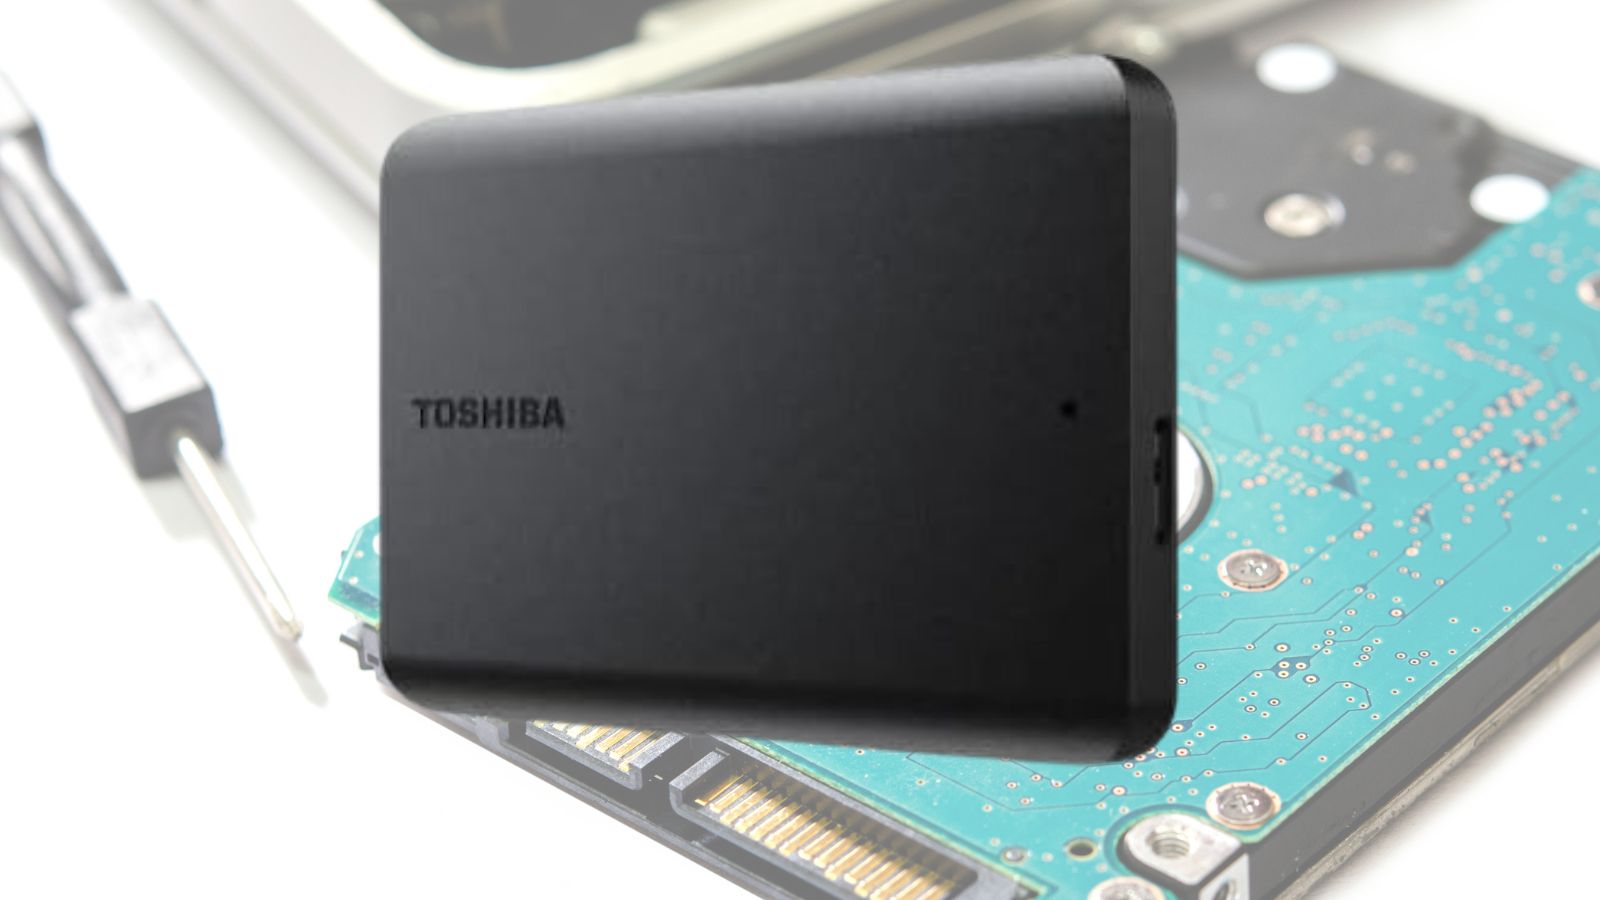 Hard Disk esterno TOSHIBA da 1TB in OFFERTA super su AMAZON (-30%)